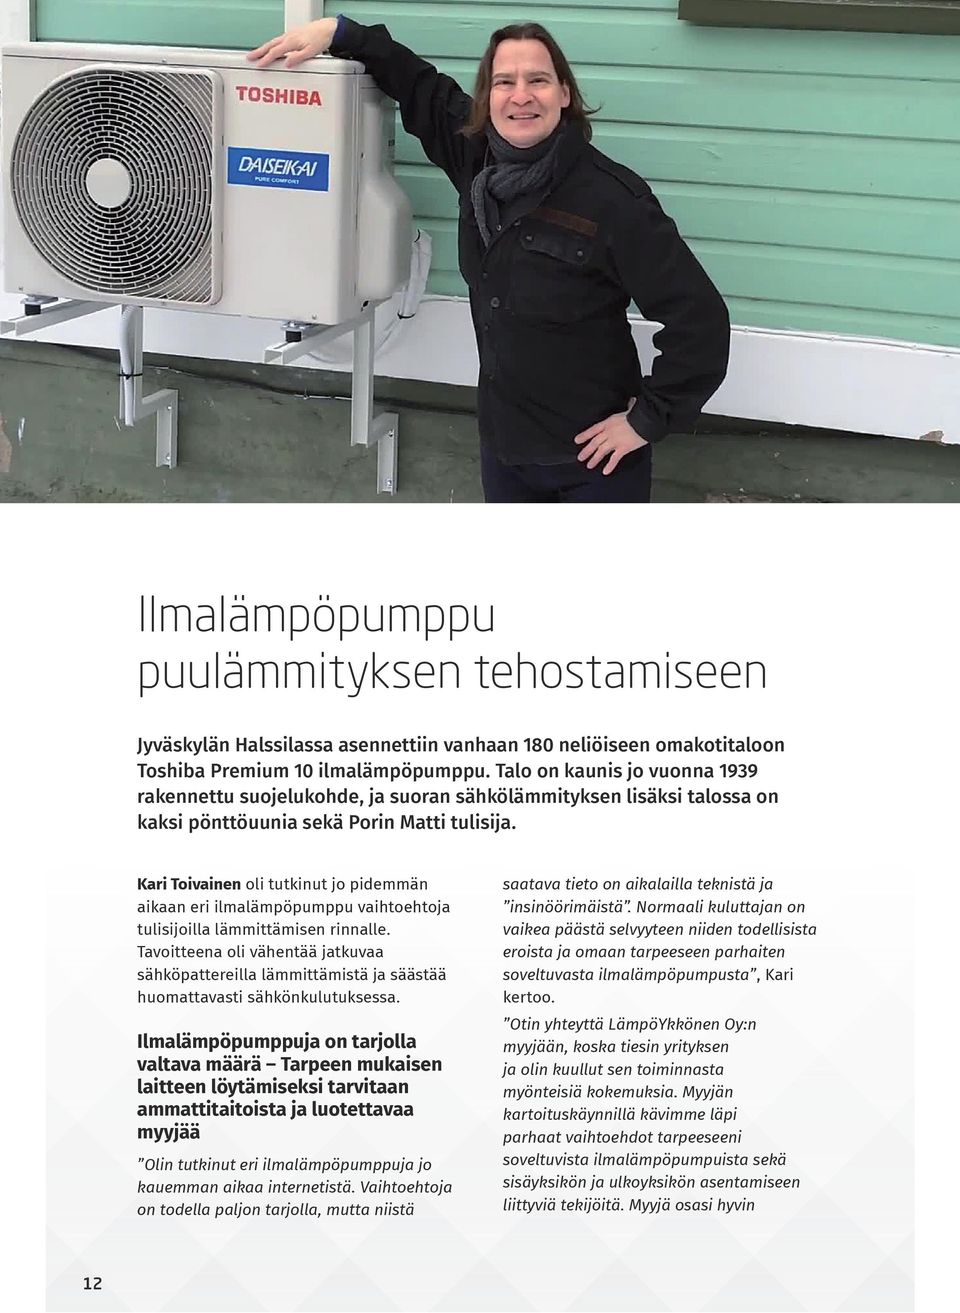 Kari Toivainen oli tutkinut jo pidemmän aikaan eri ilmalämpöpumppu vaihtoehtoja tulisijoilla lämmittämisen rinnalle.